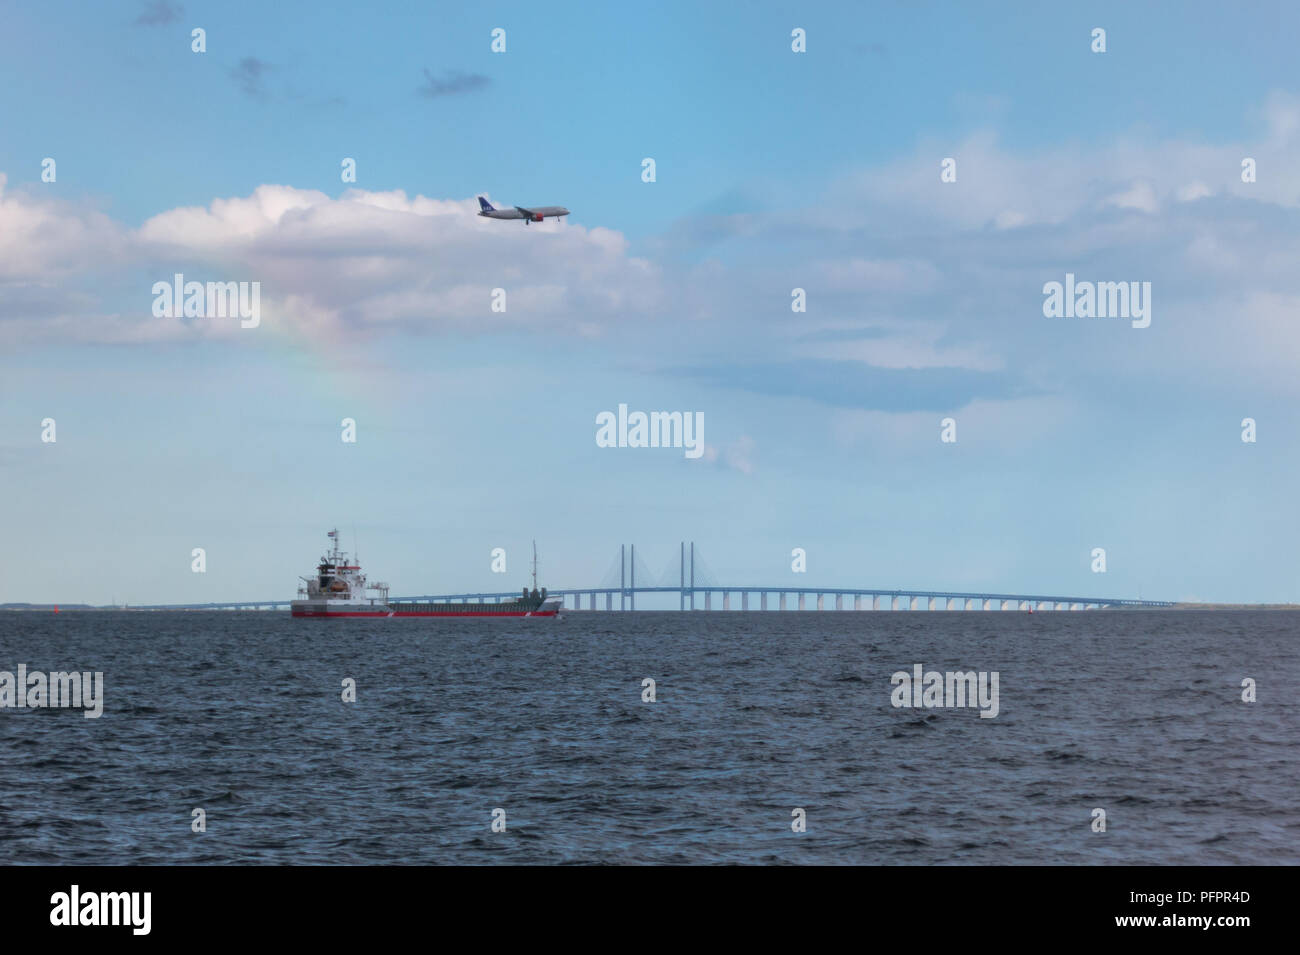 Fotografia di una nave, aereo e ponte autostradale, che mostrano i diversi modi di trasporto e dei mezzi del commercio globale causando grandi emissioni di anidride carbonica Foto Stock